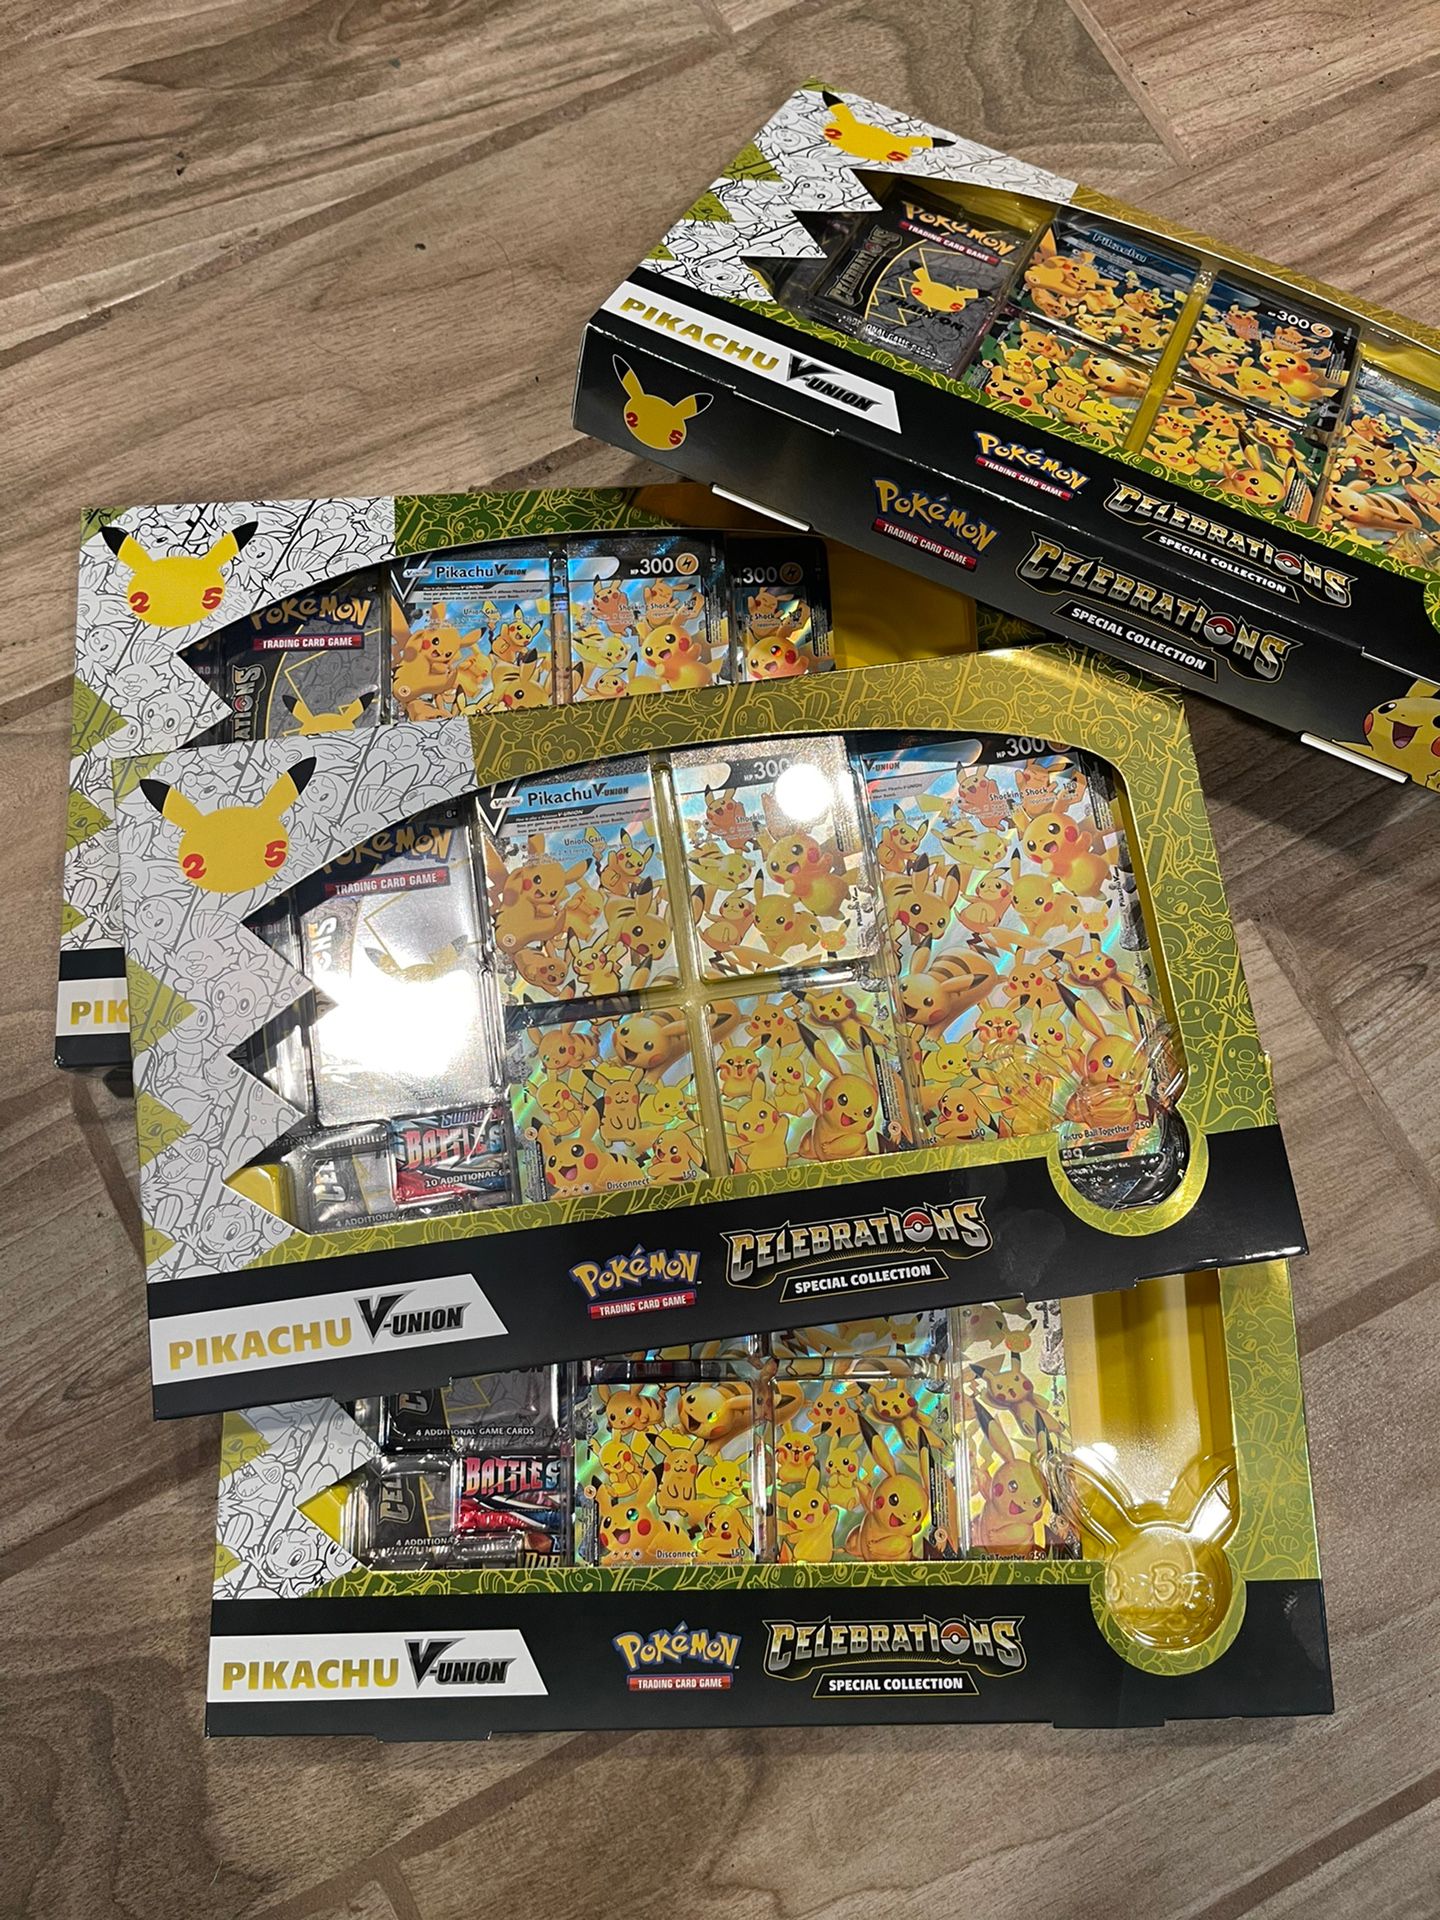 Pokémon Celebrations Special Collection Pikachu V Union Box